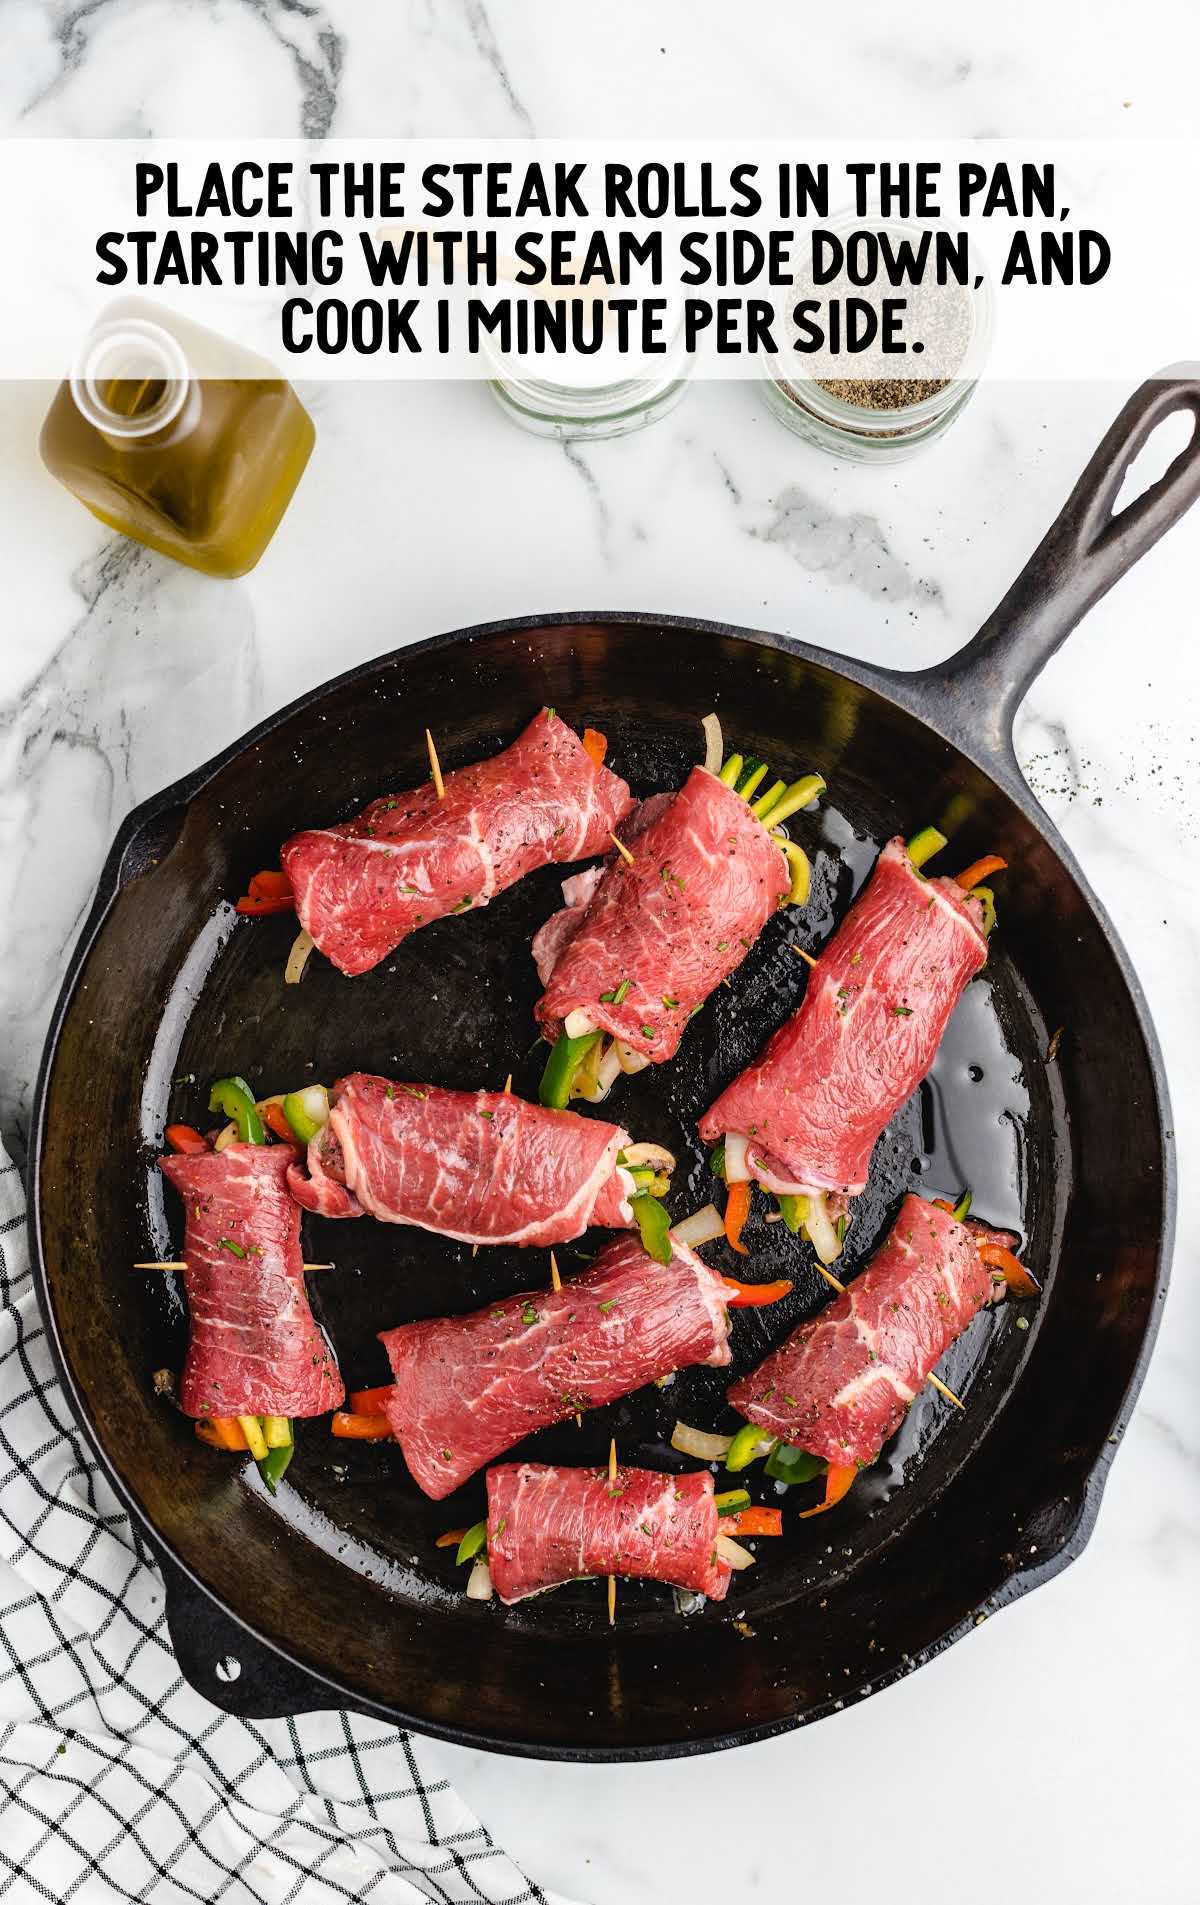 steak rolls placed in a pan